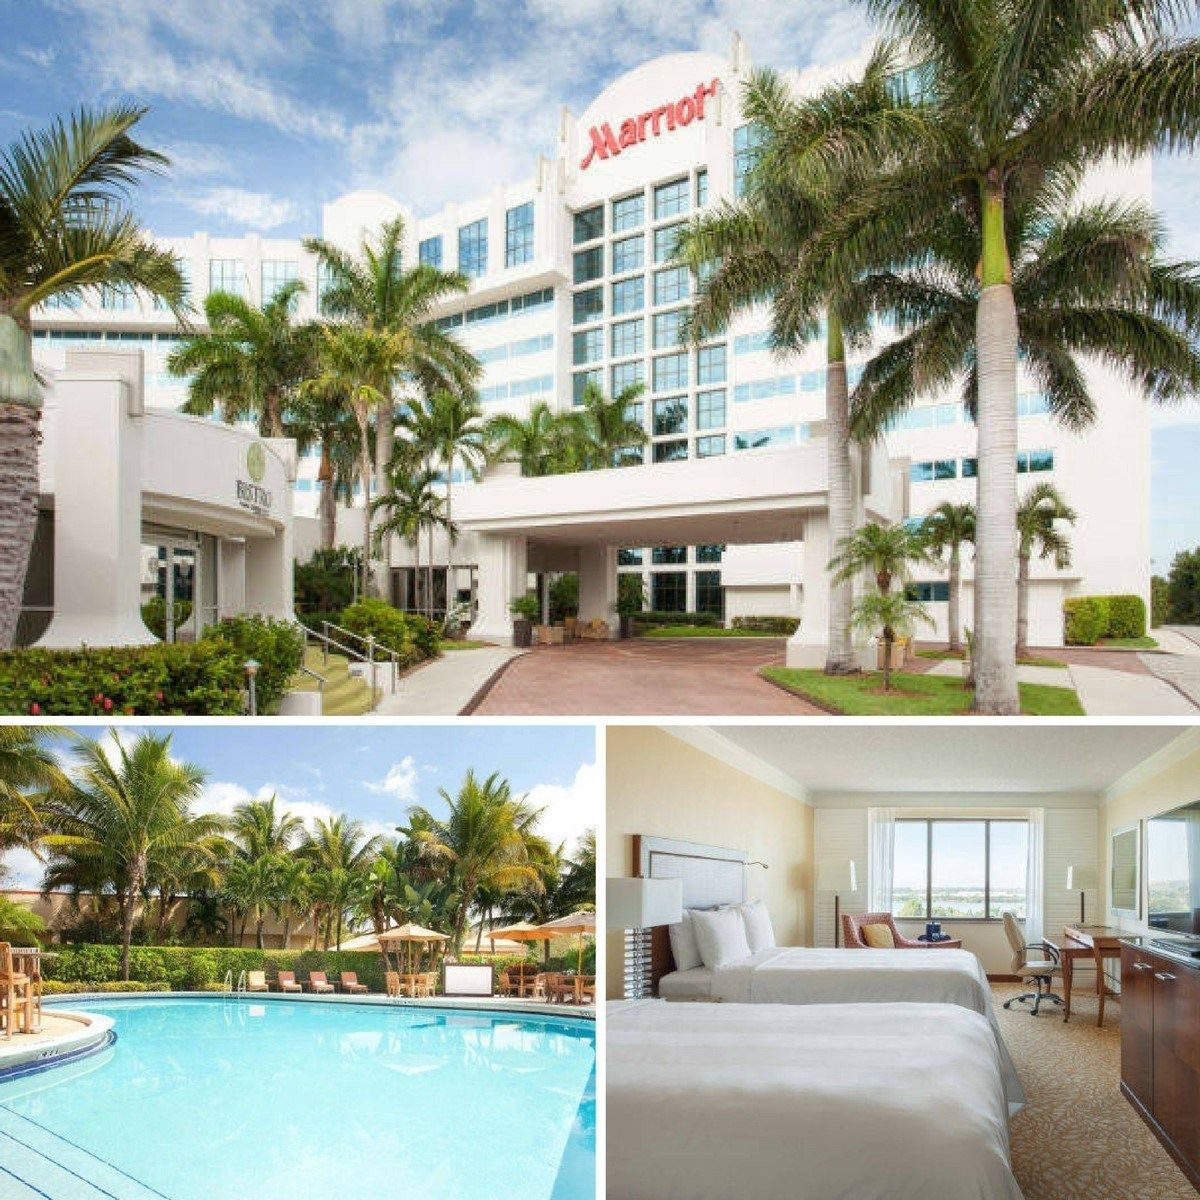 West Palm Beach Marriott New Deal